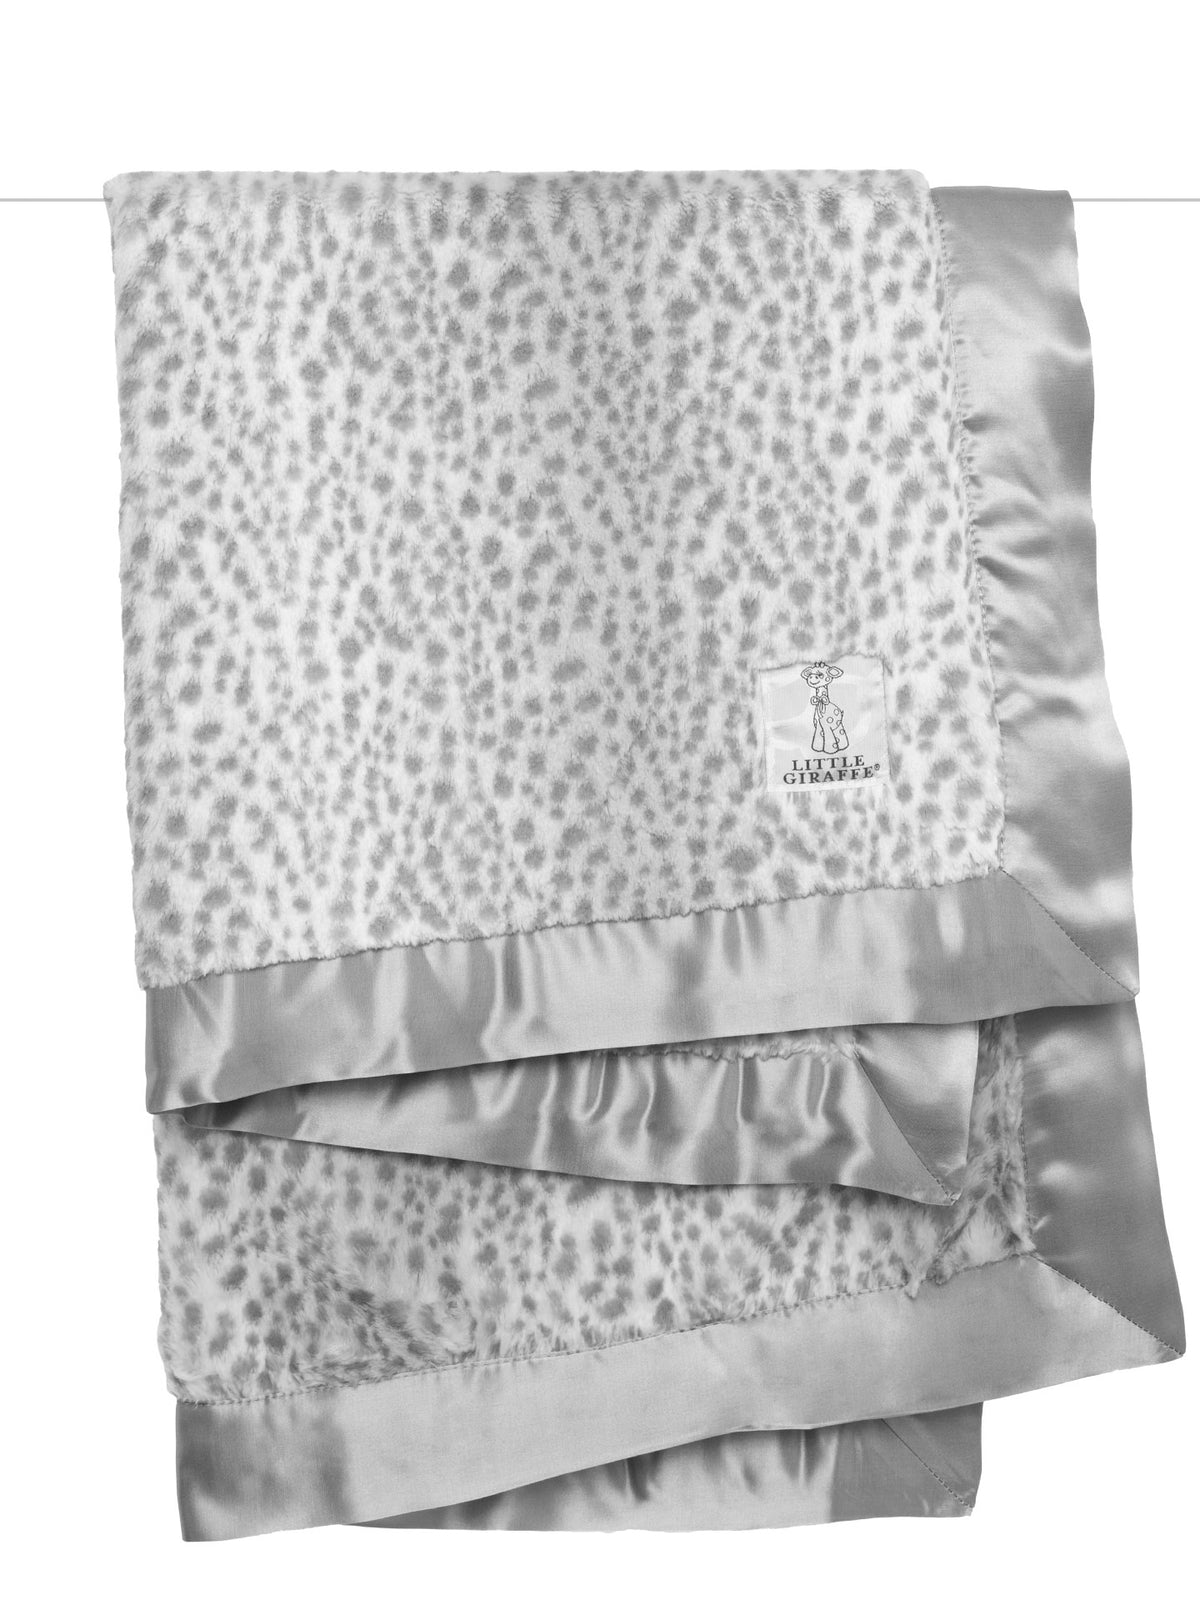 Luxe™ Snow Leopard Baby Blanket